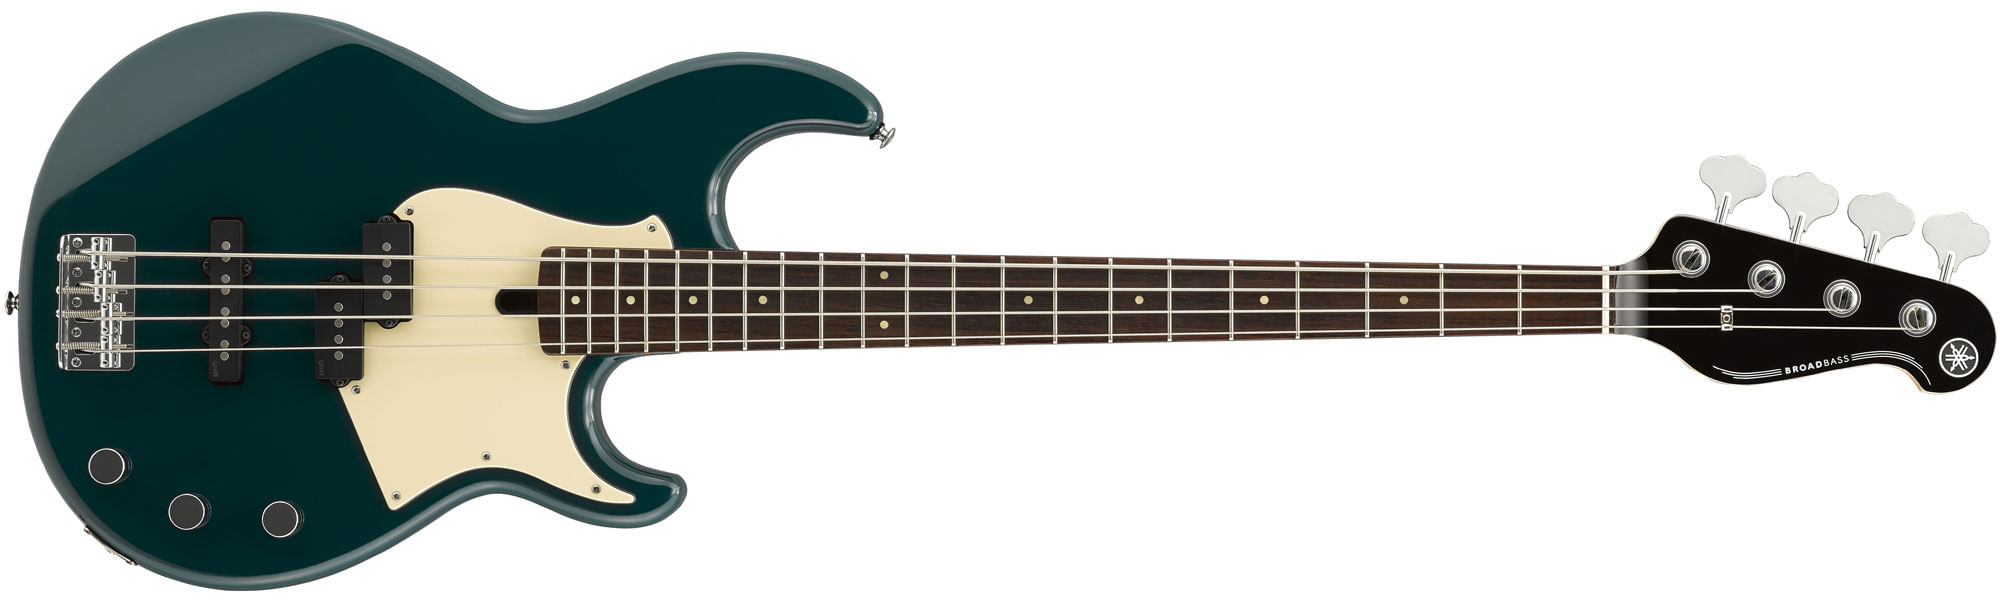 Yamaha BB434 Bass Guitar - Rosewood, Teal Blue